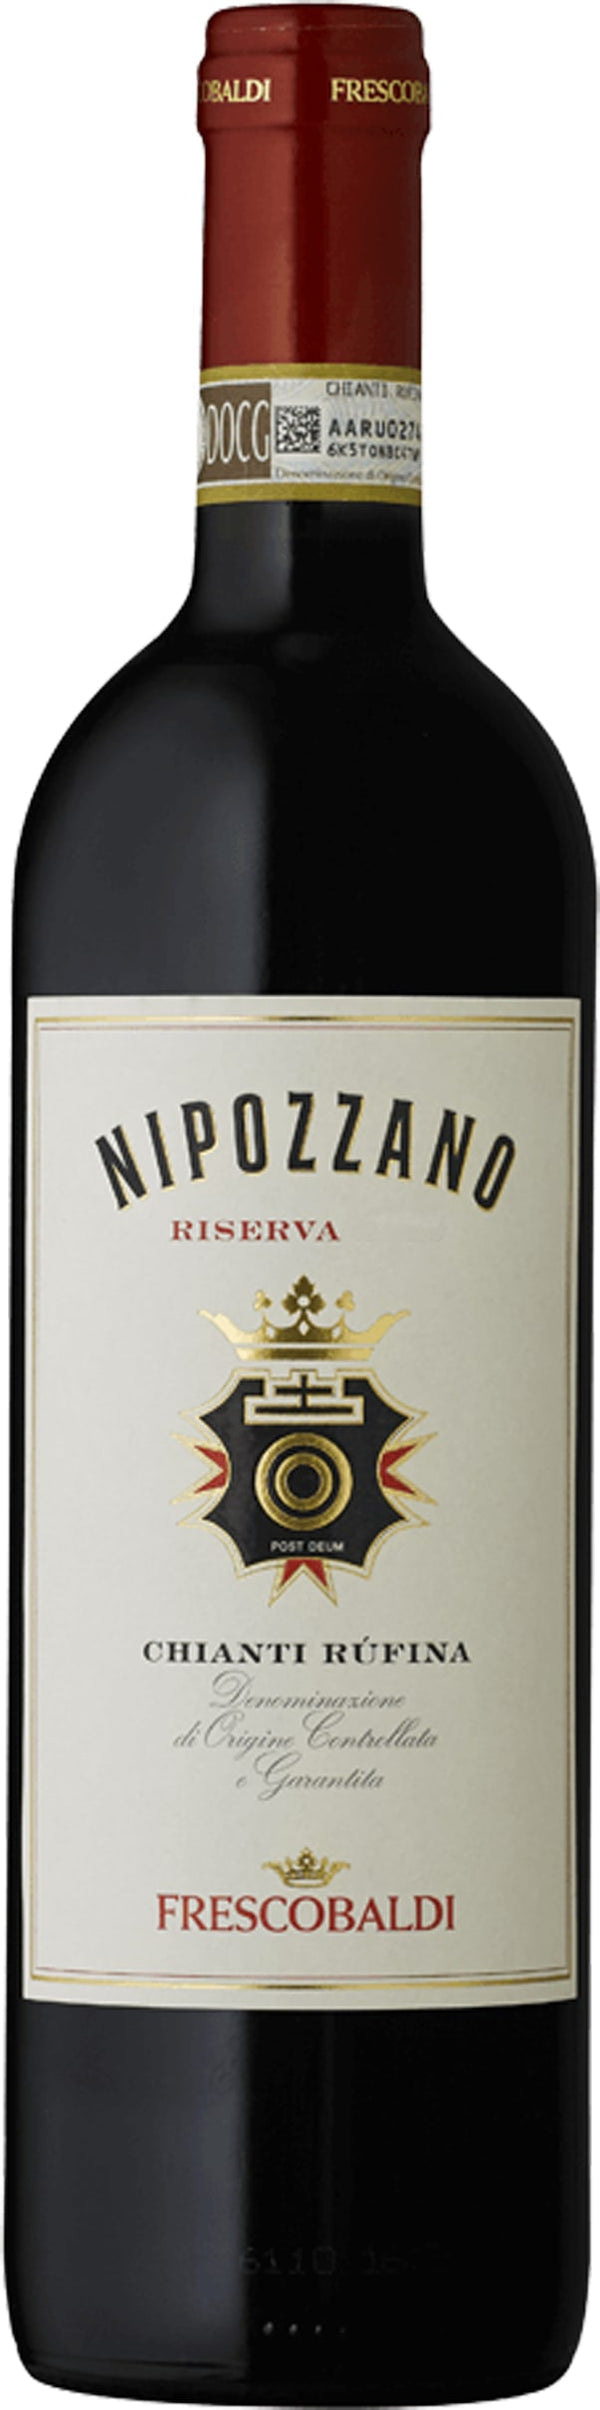 Frescobaldi Nipozzano Chianti Rufina Riserva 2019 6x75cl - Just Wines 